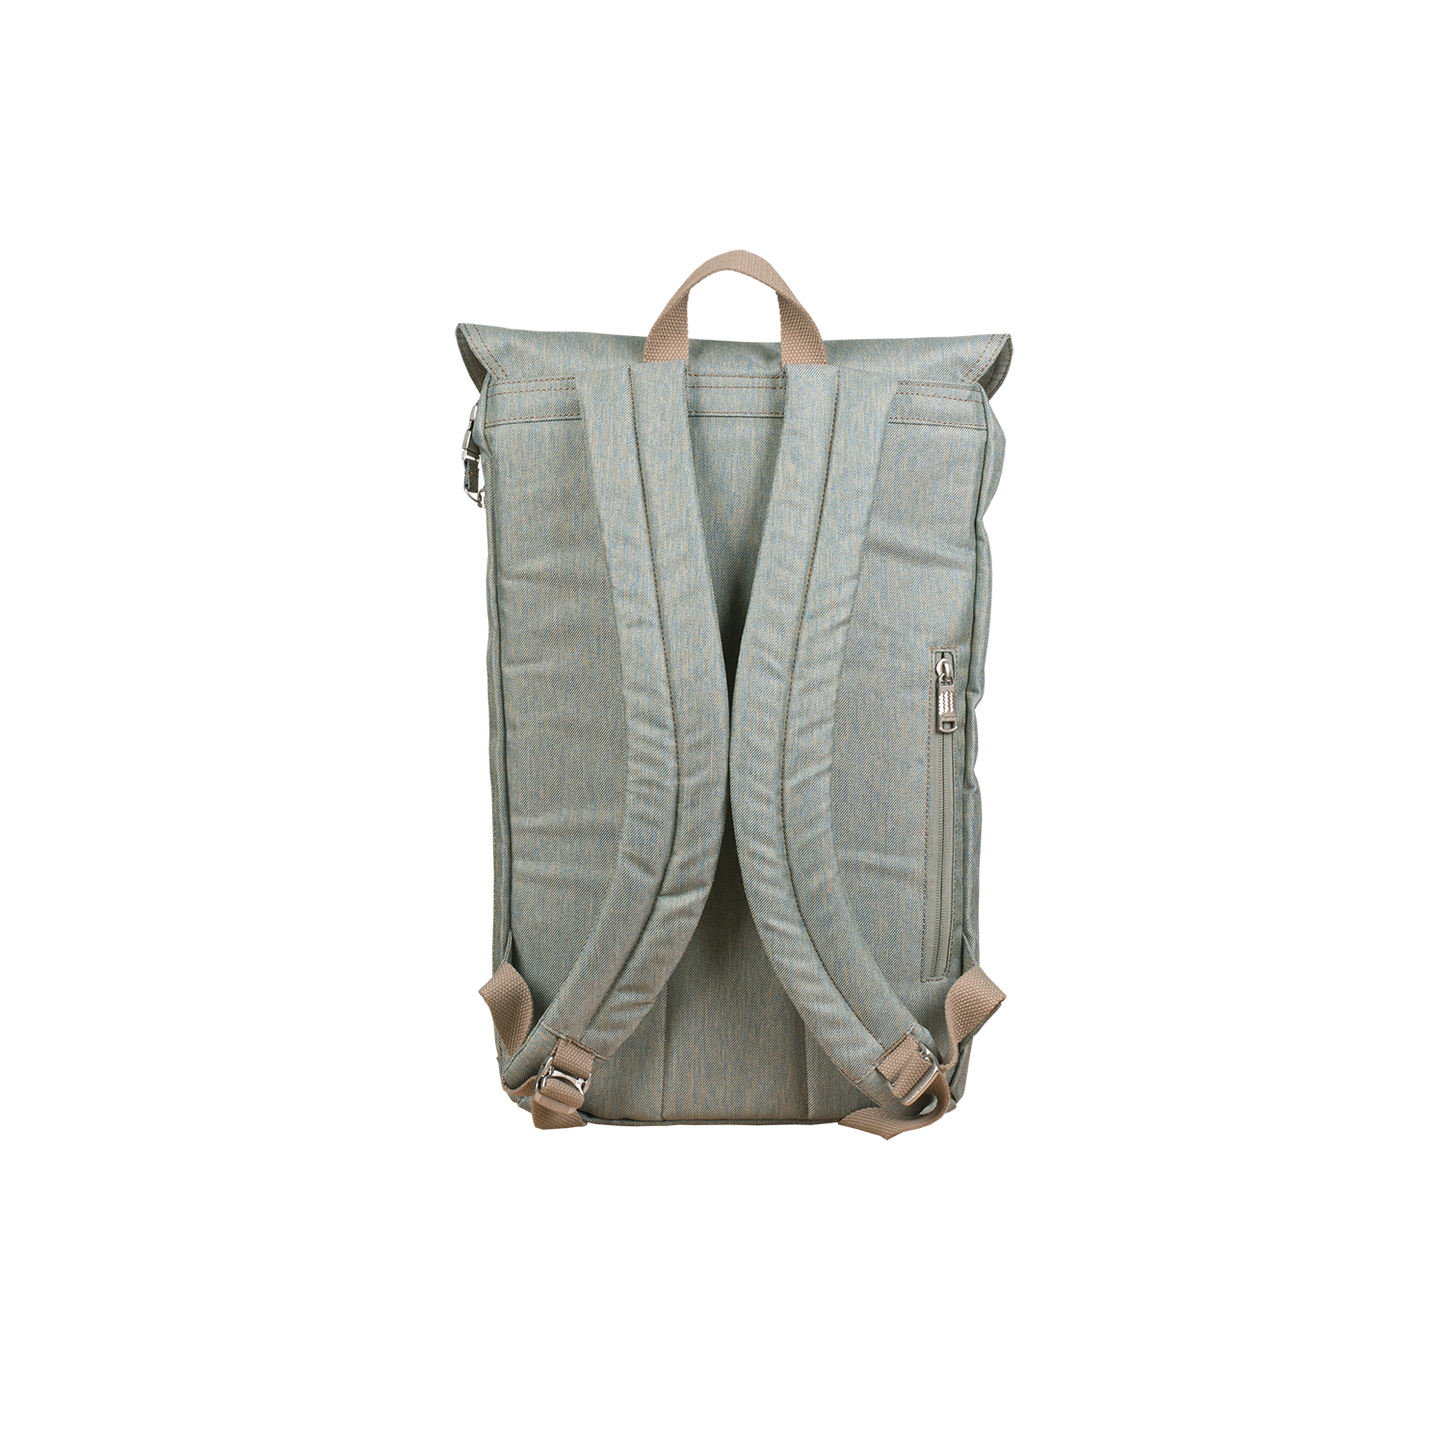 Plato Backpack